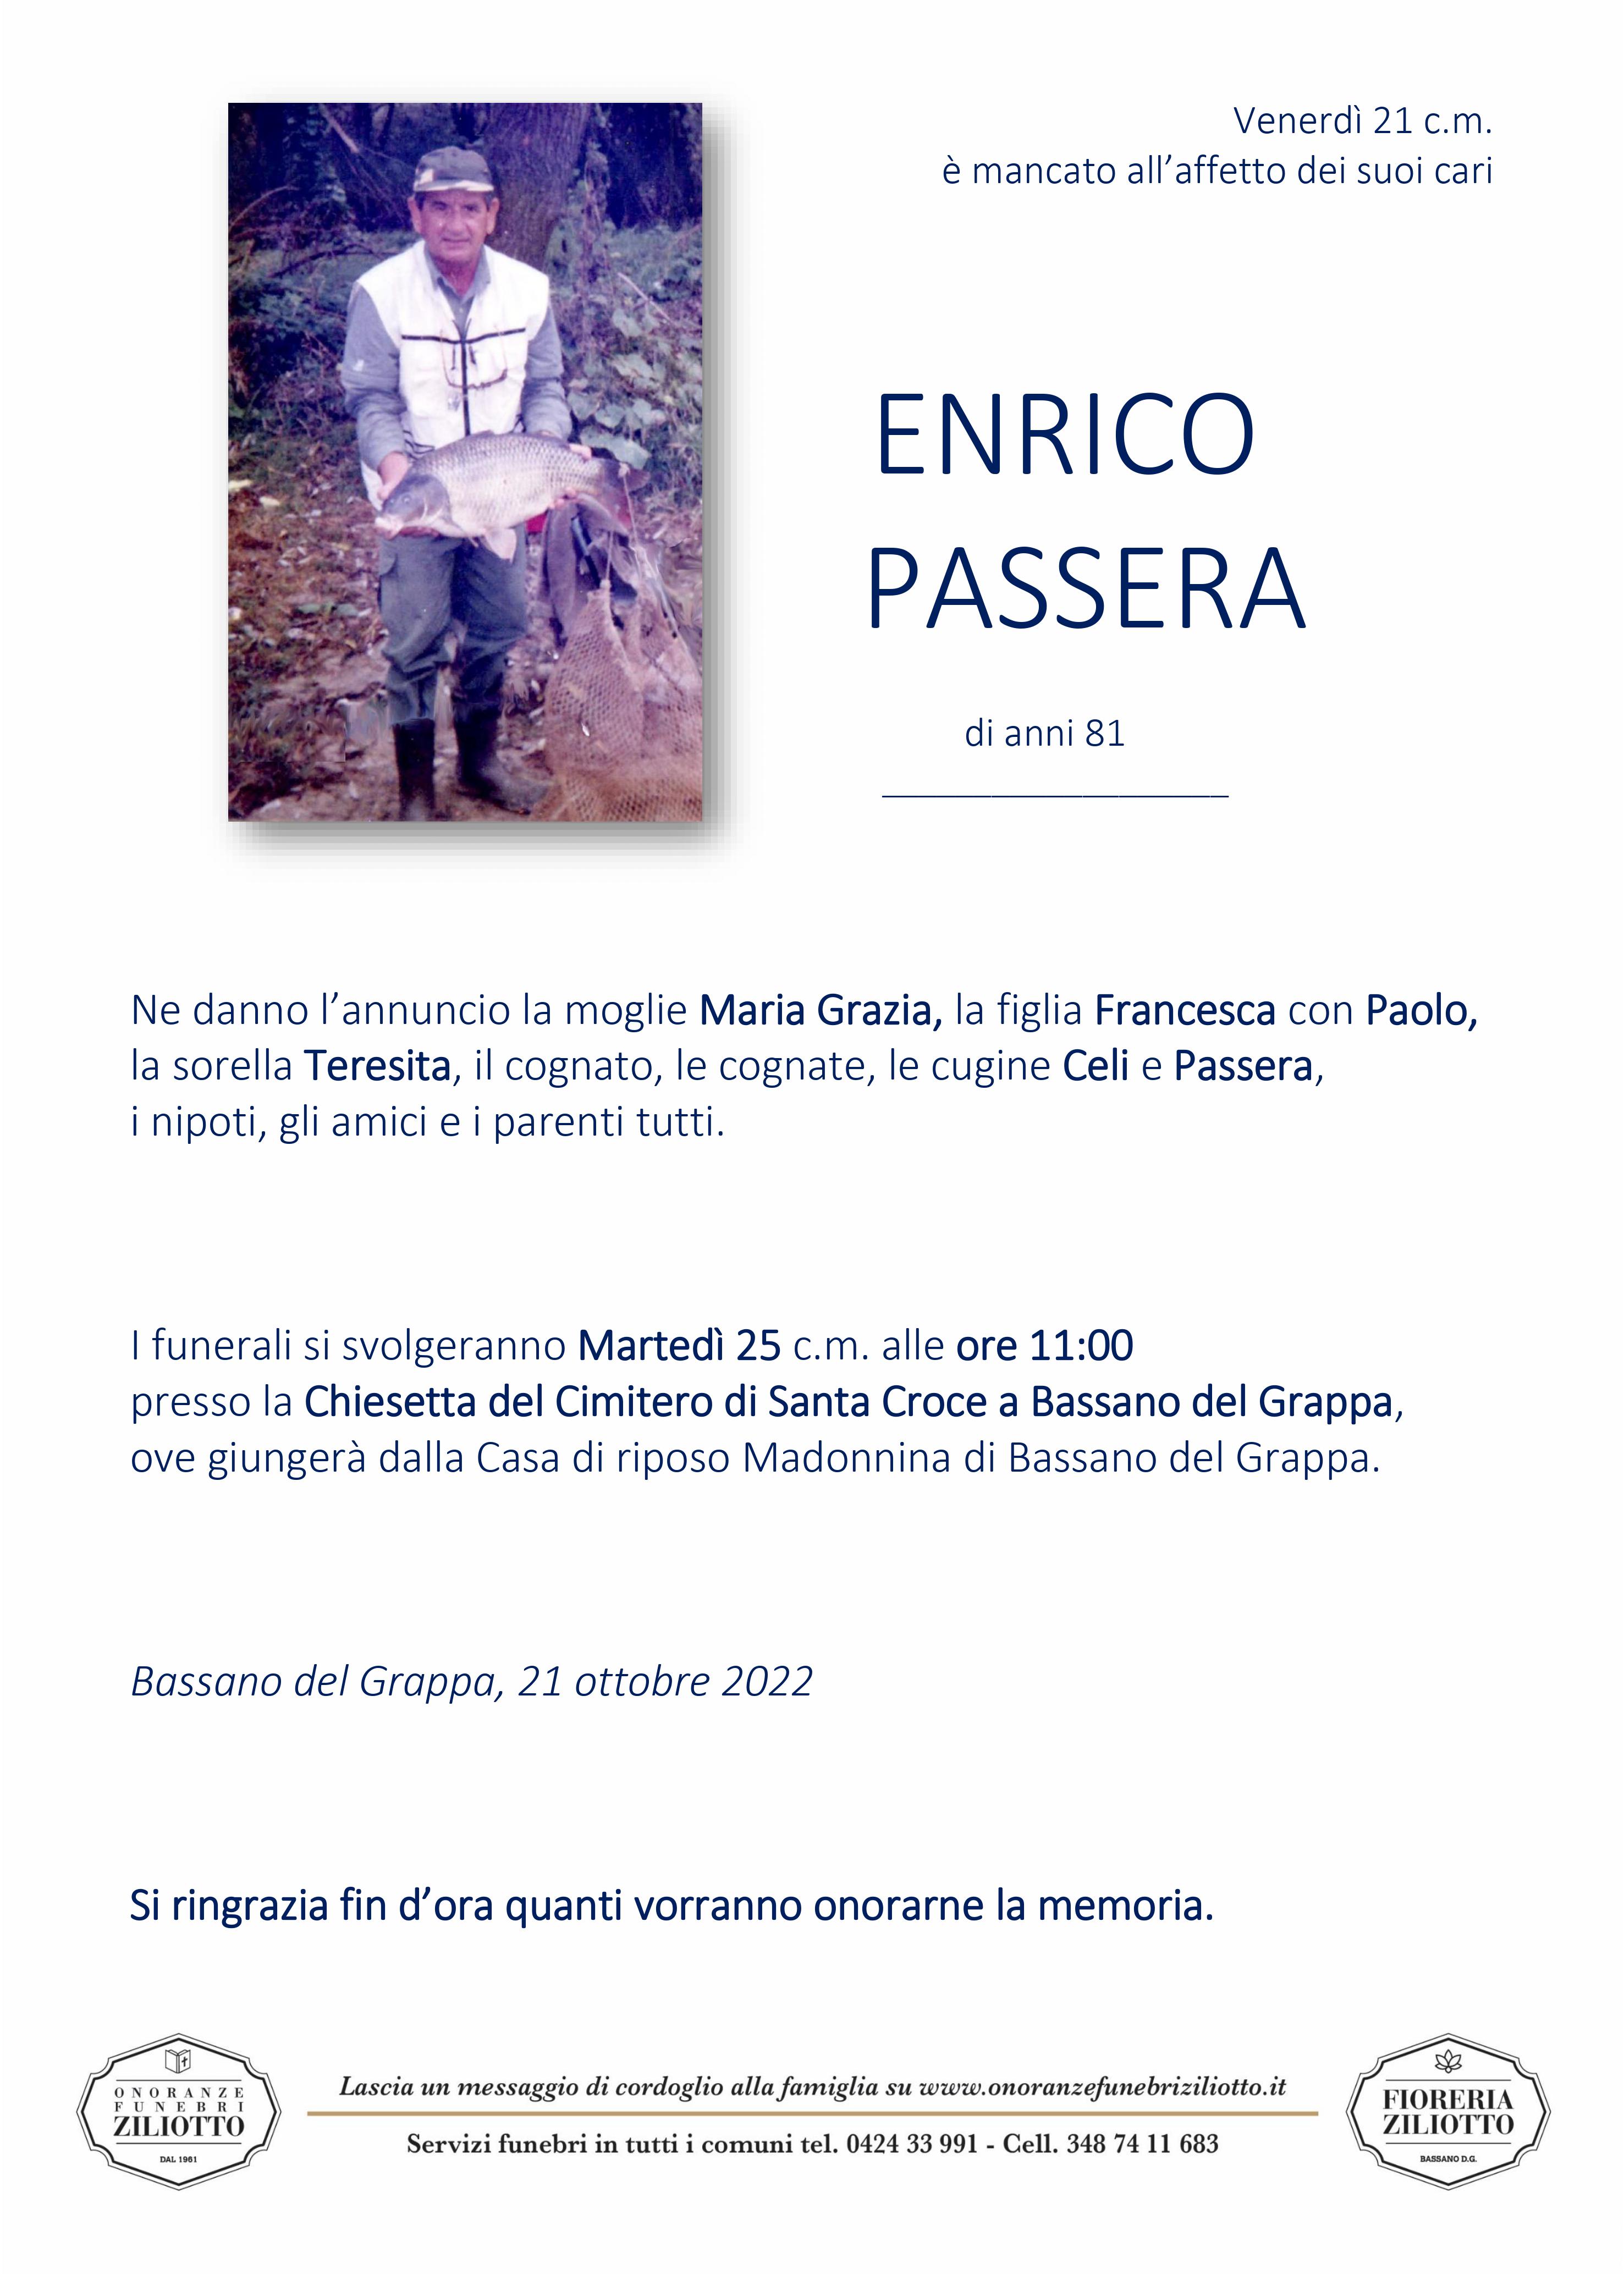 Enrico Passera - 81 anni - BASSANO DEL GRAPPA